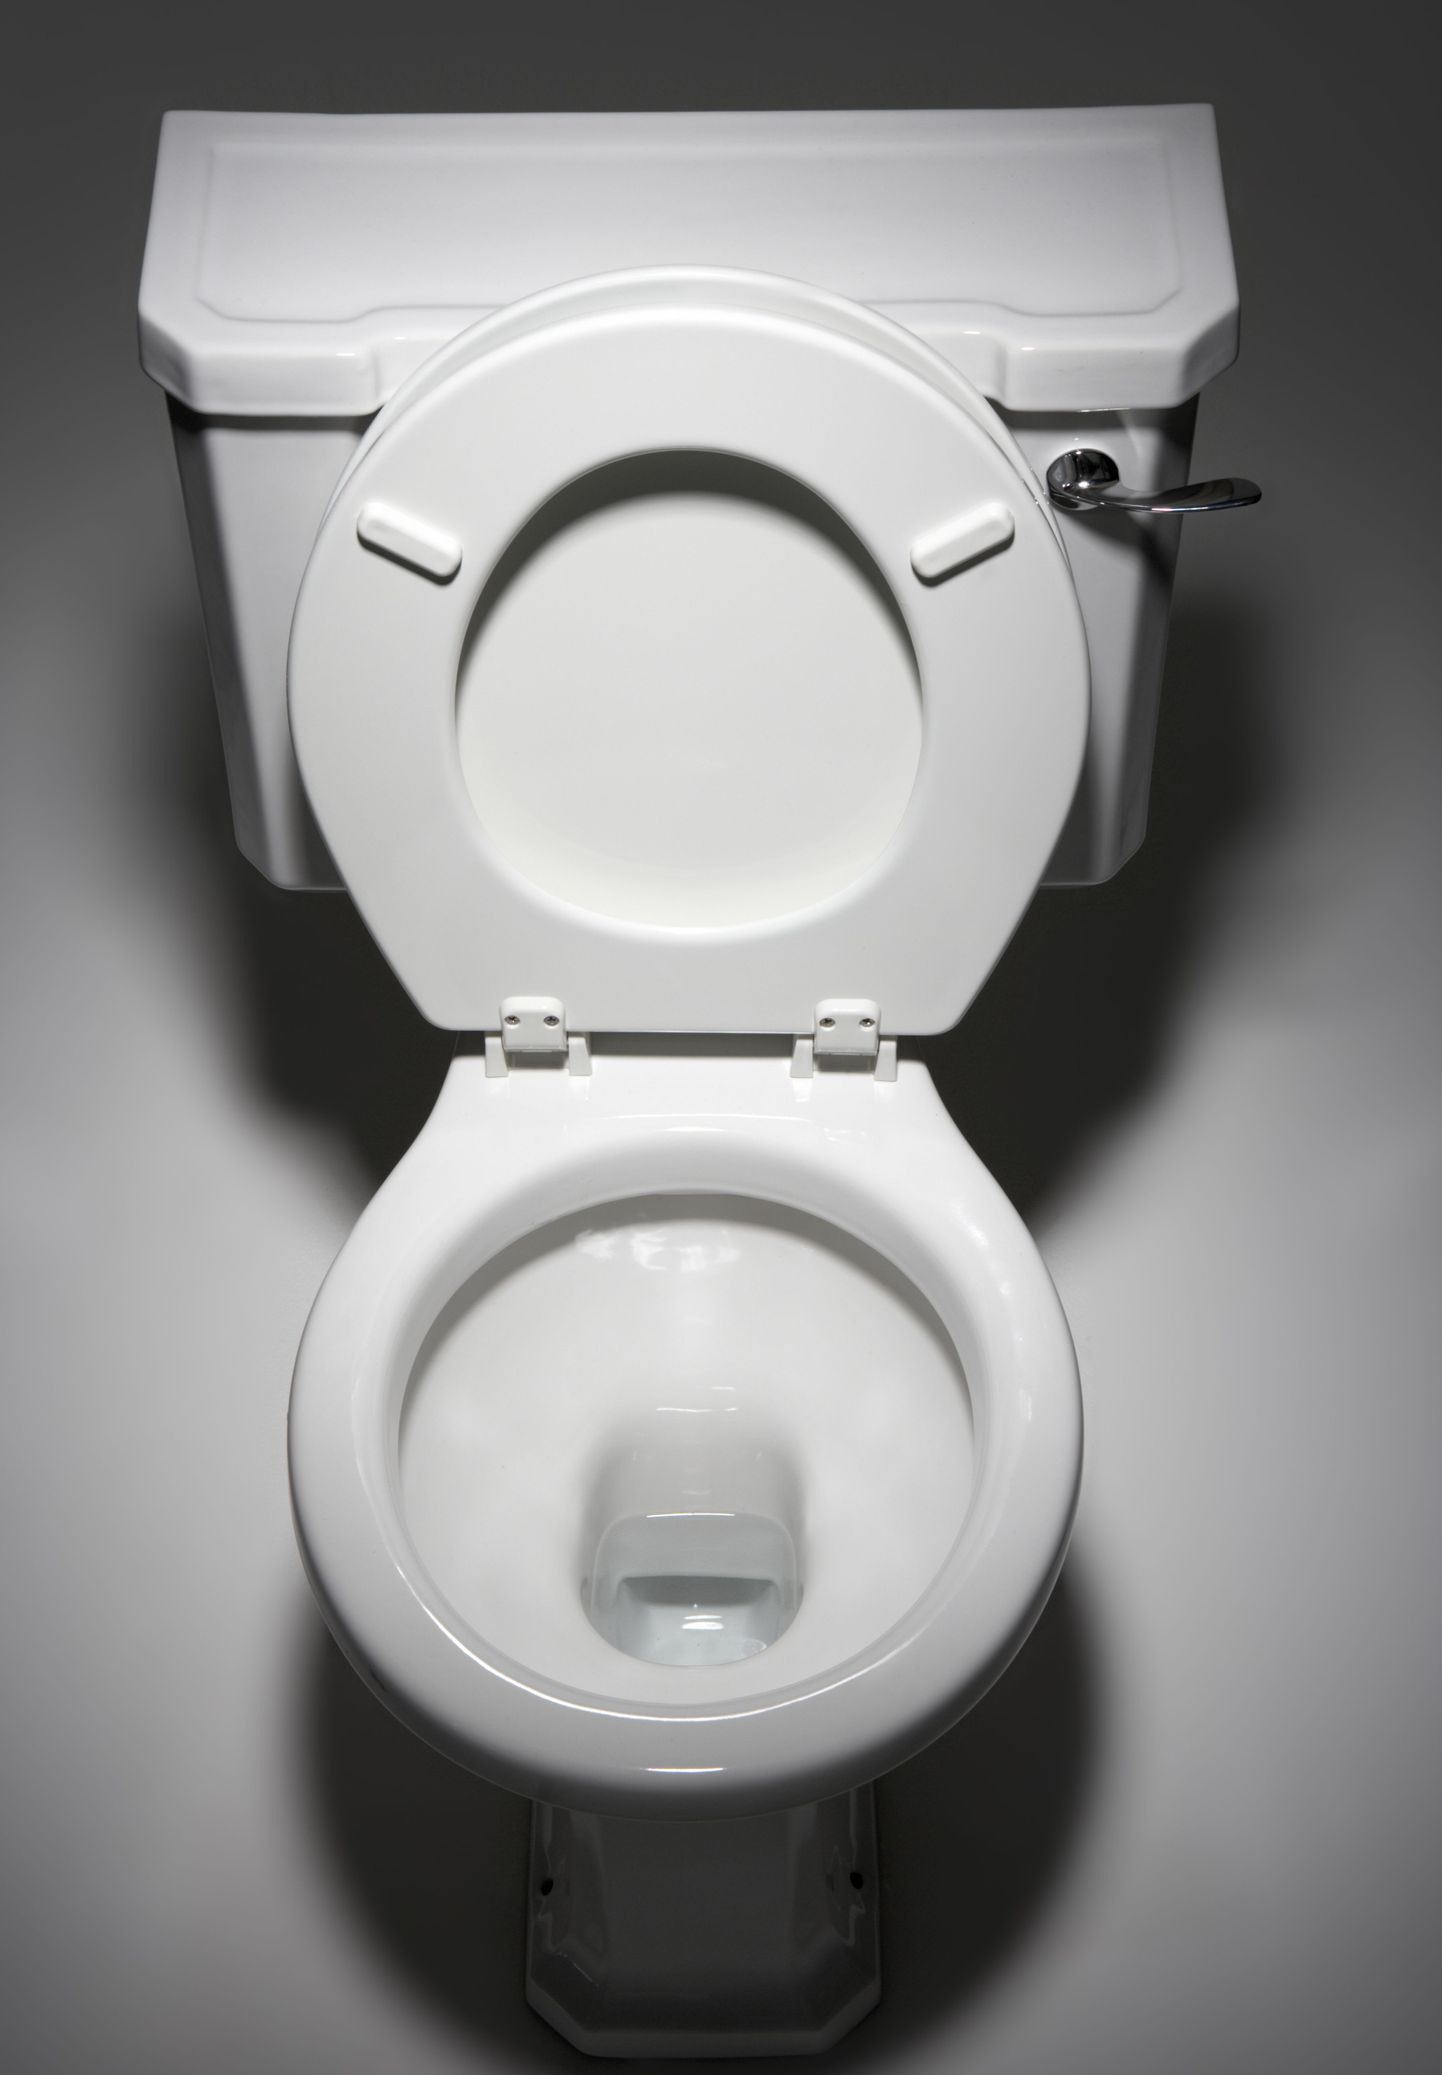 Keskkonnasõbralik WC-pott eraldab uriini ja väljaheite